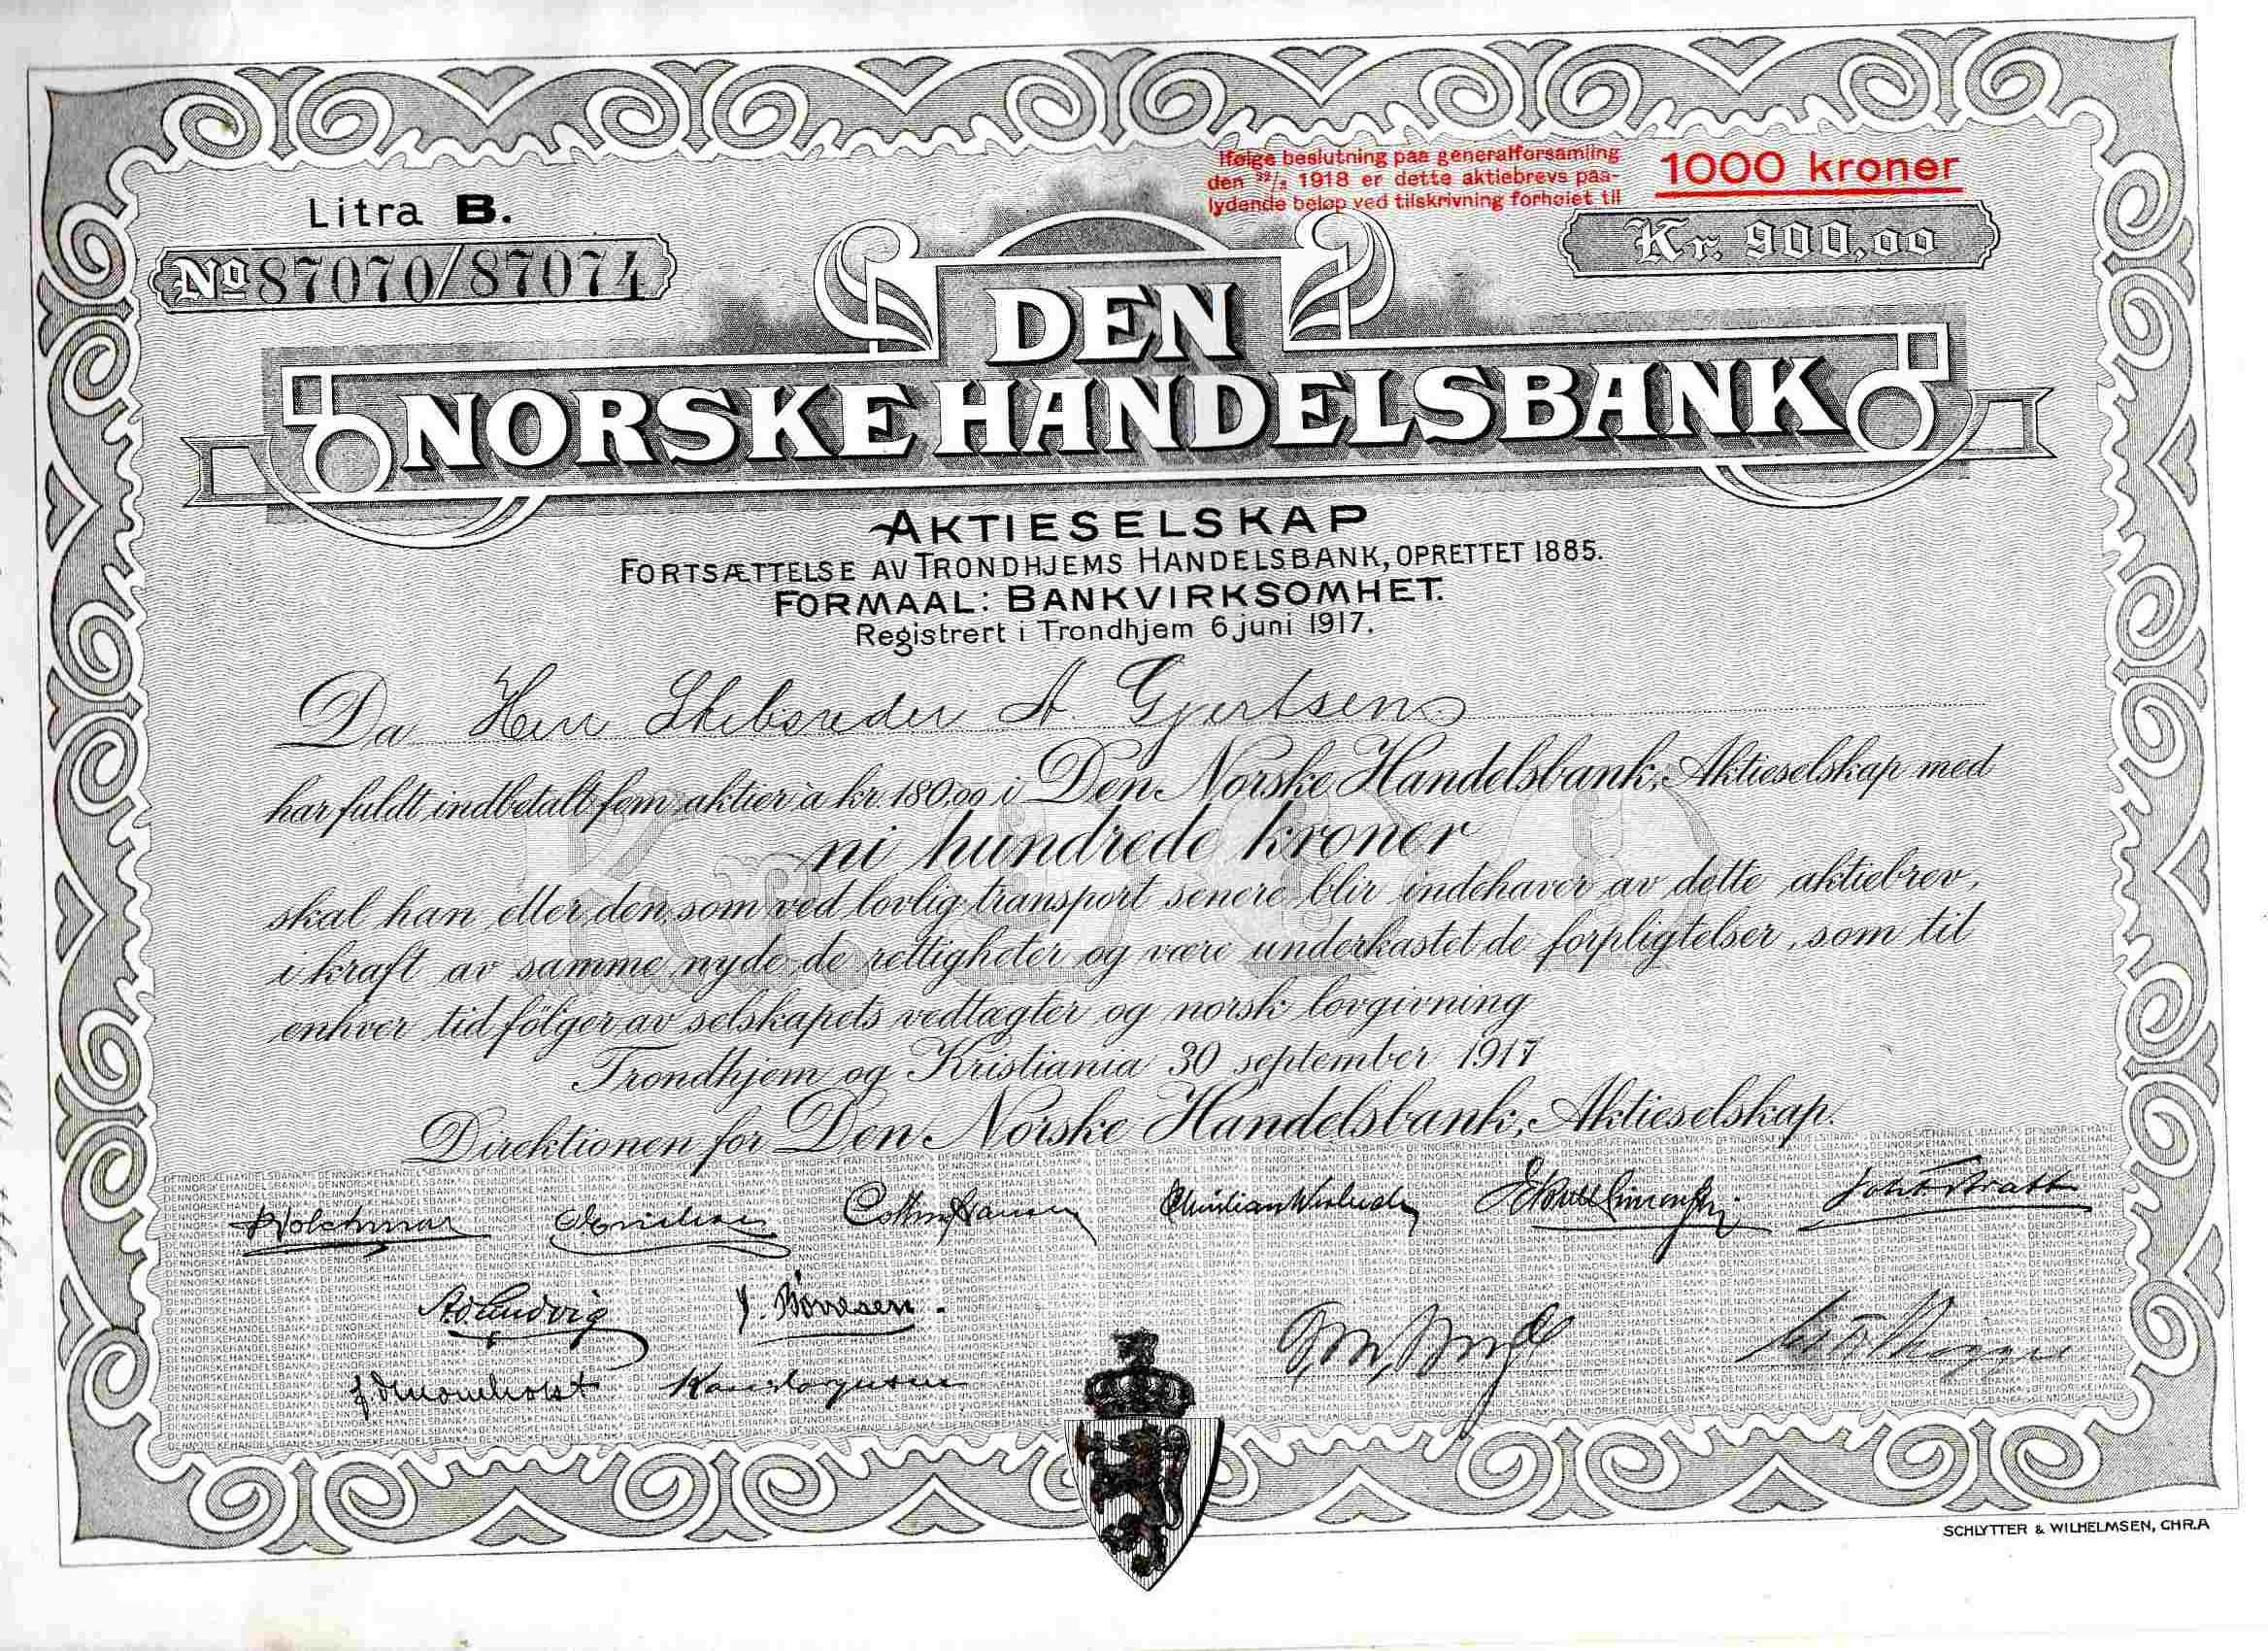 Den norske handelsbank kr 1000/900 Litra B 199700 Trondhjem 1917